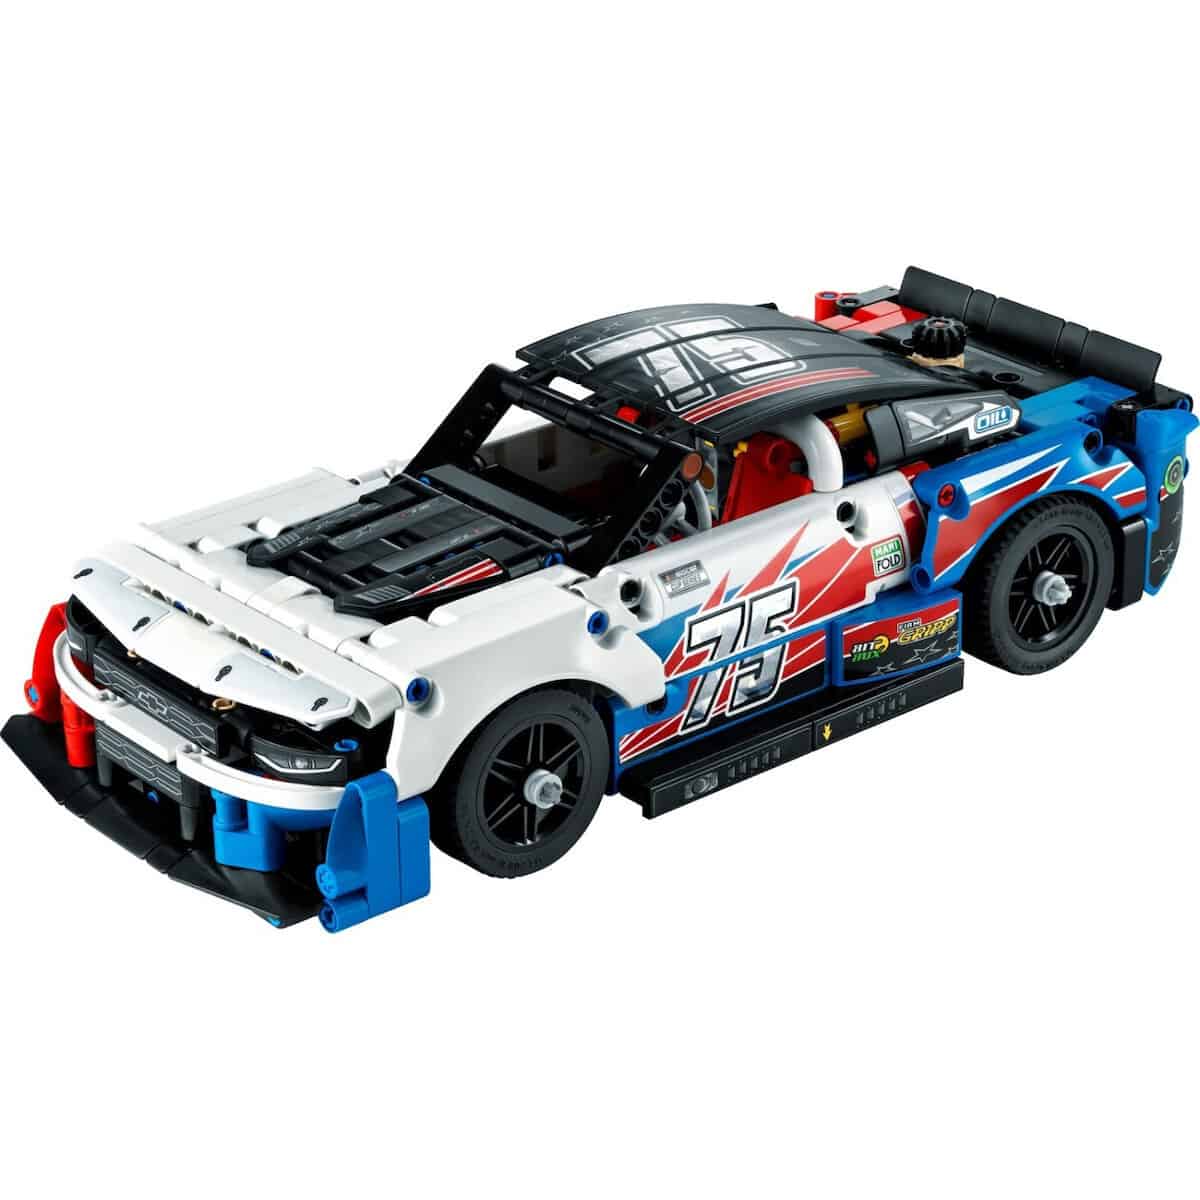 Lego Technic - Nascar Next Gen Chevrolet Camaro